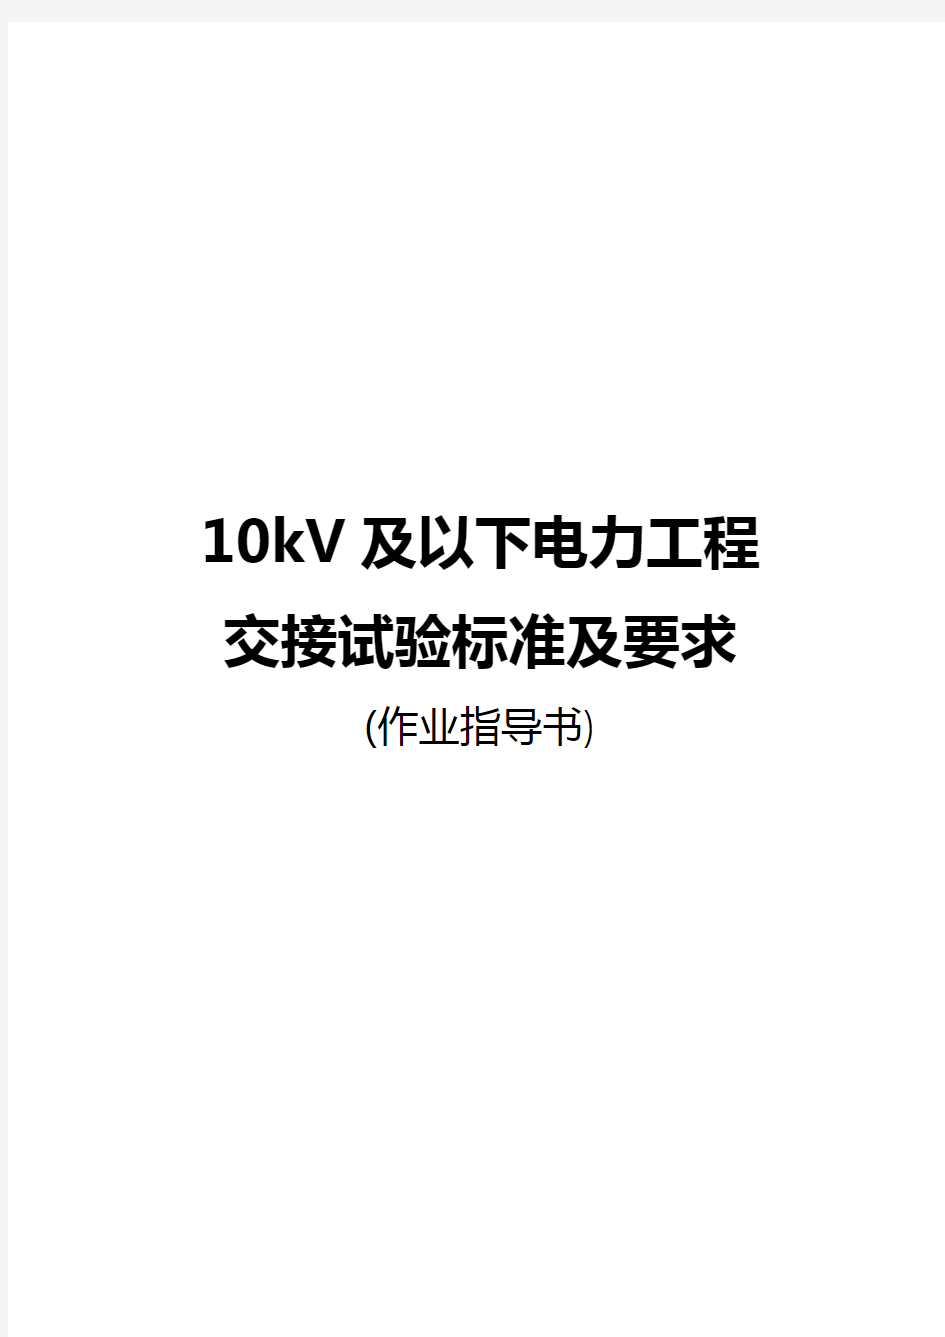 10kV电气设备试验作业指导书校对版